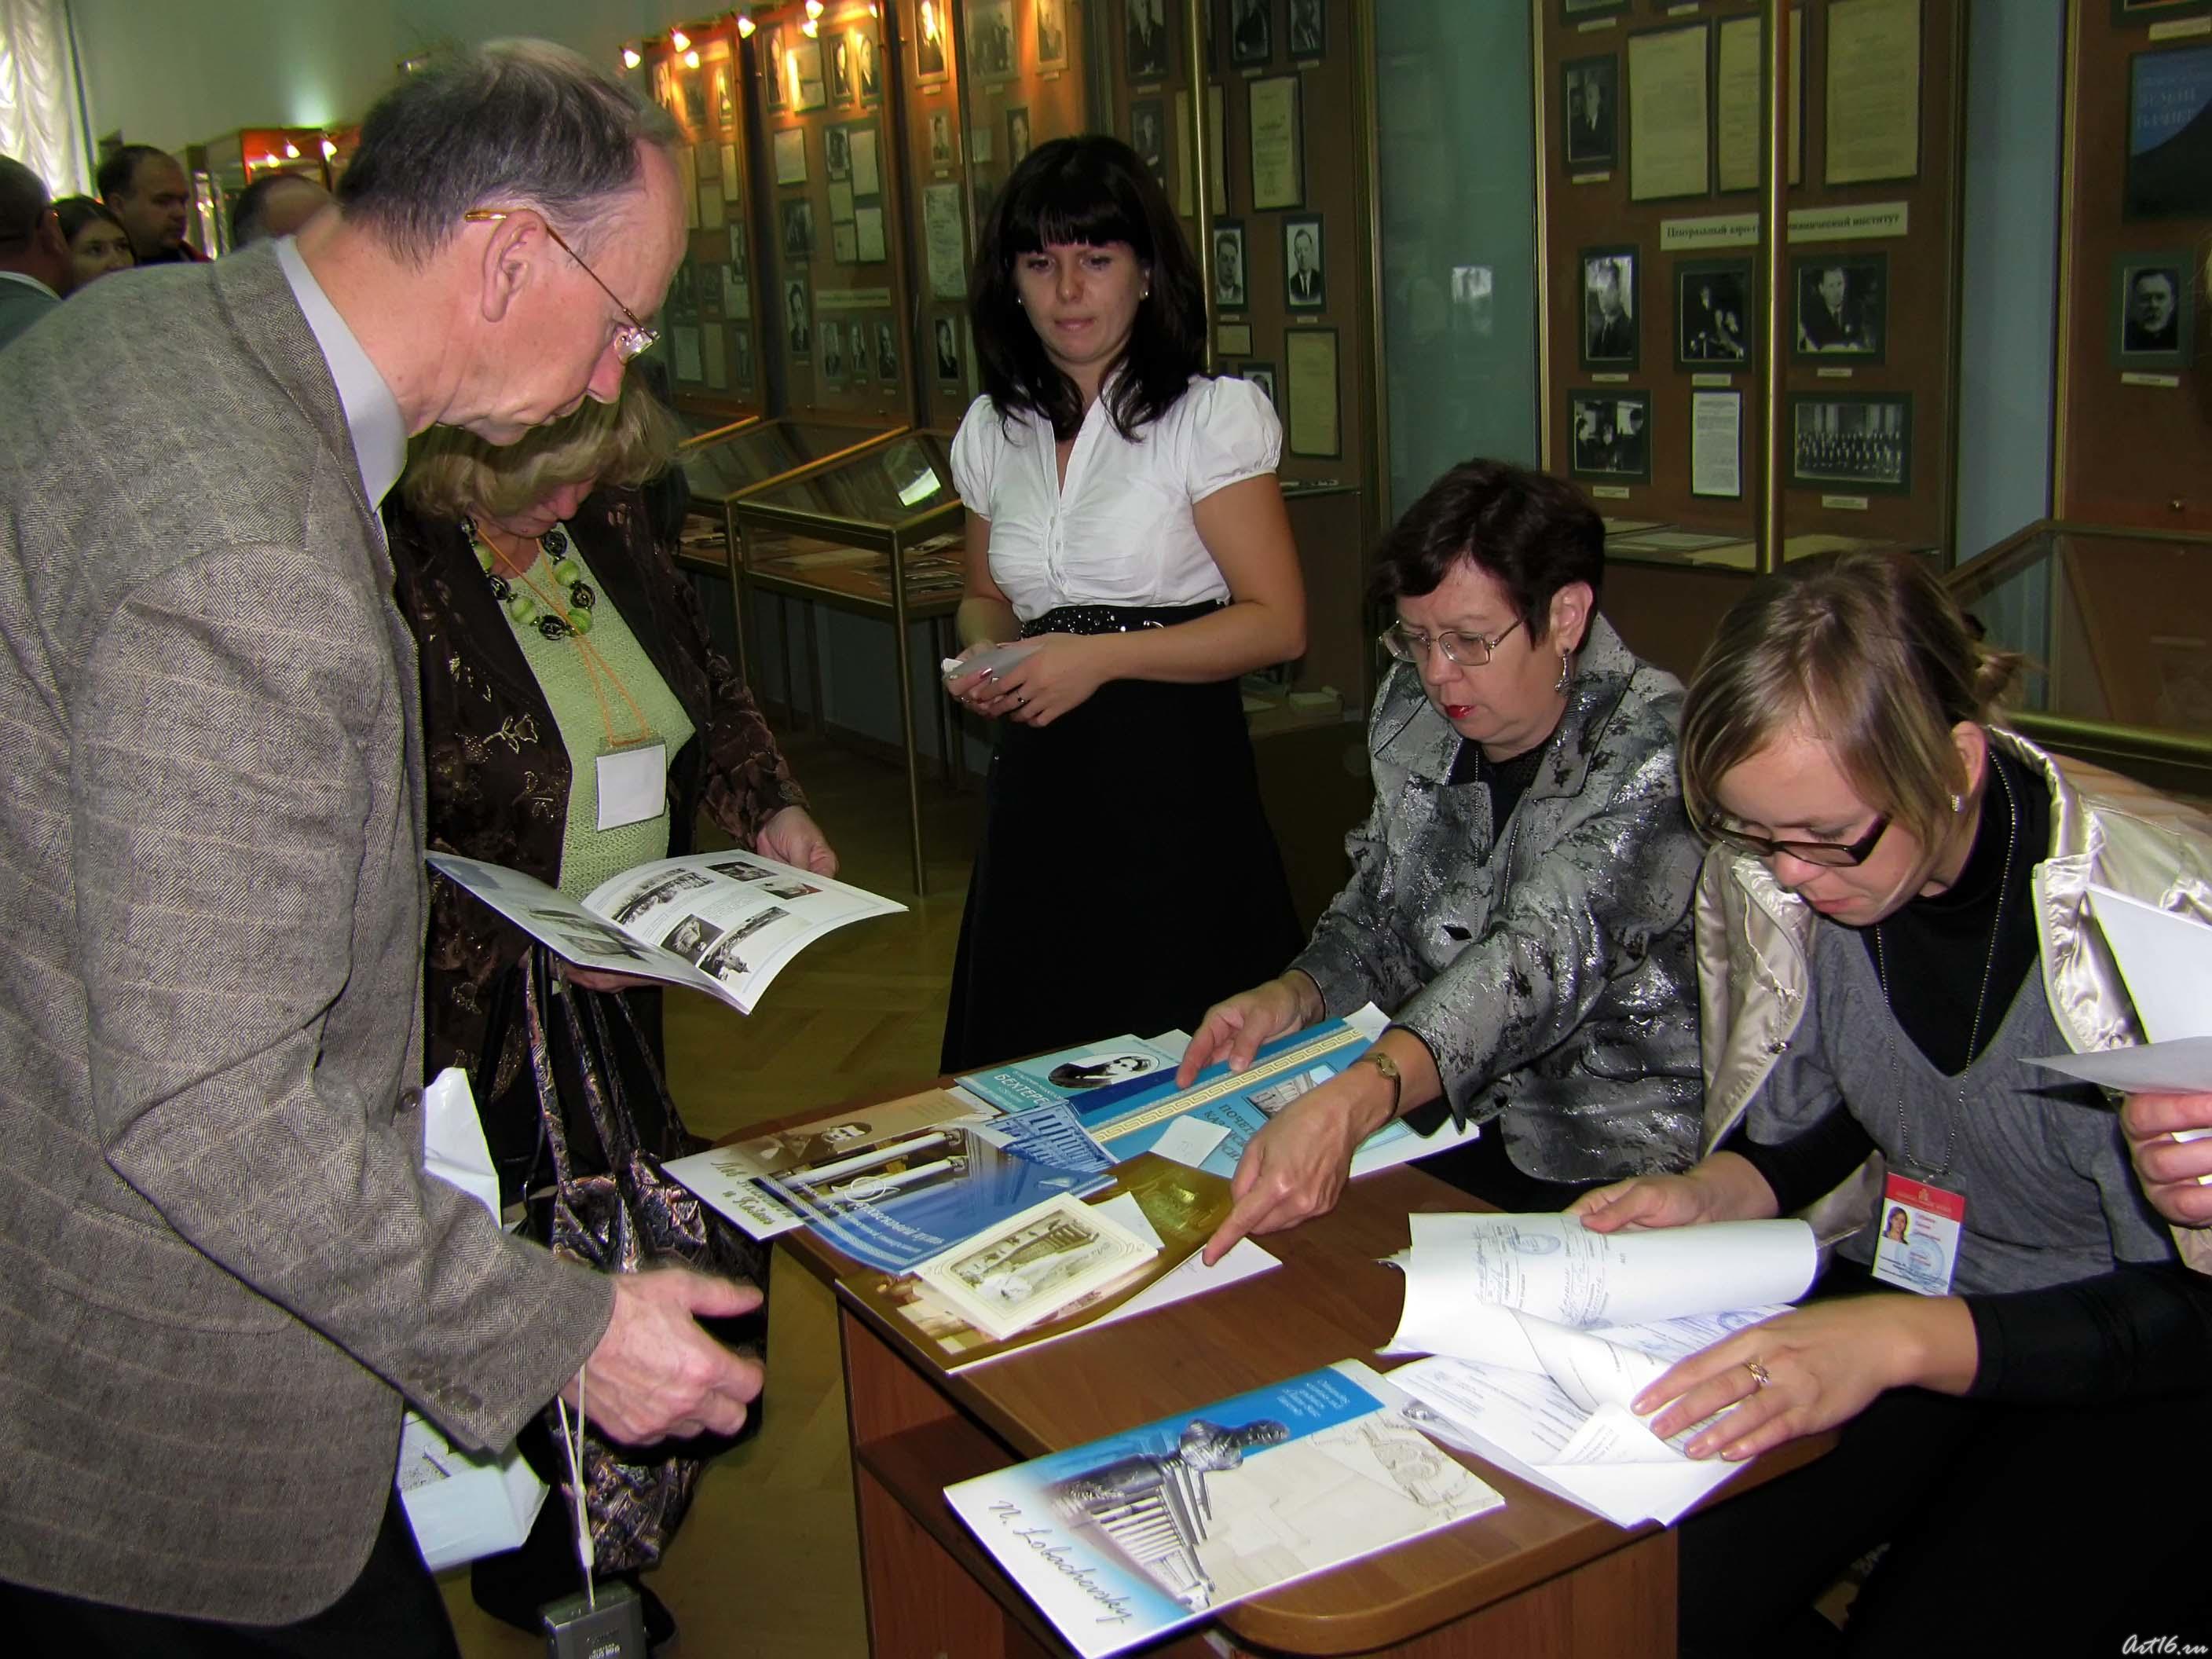 Регистрация участников научно-практической конференции ::Форум 2010